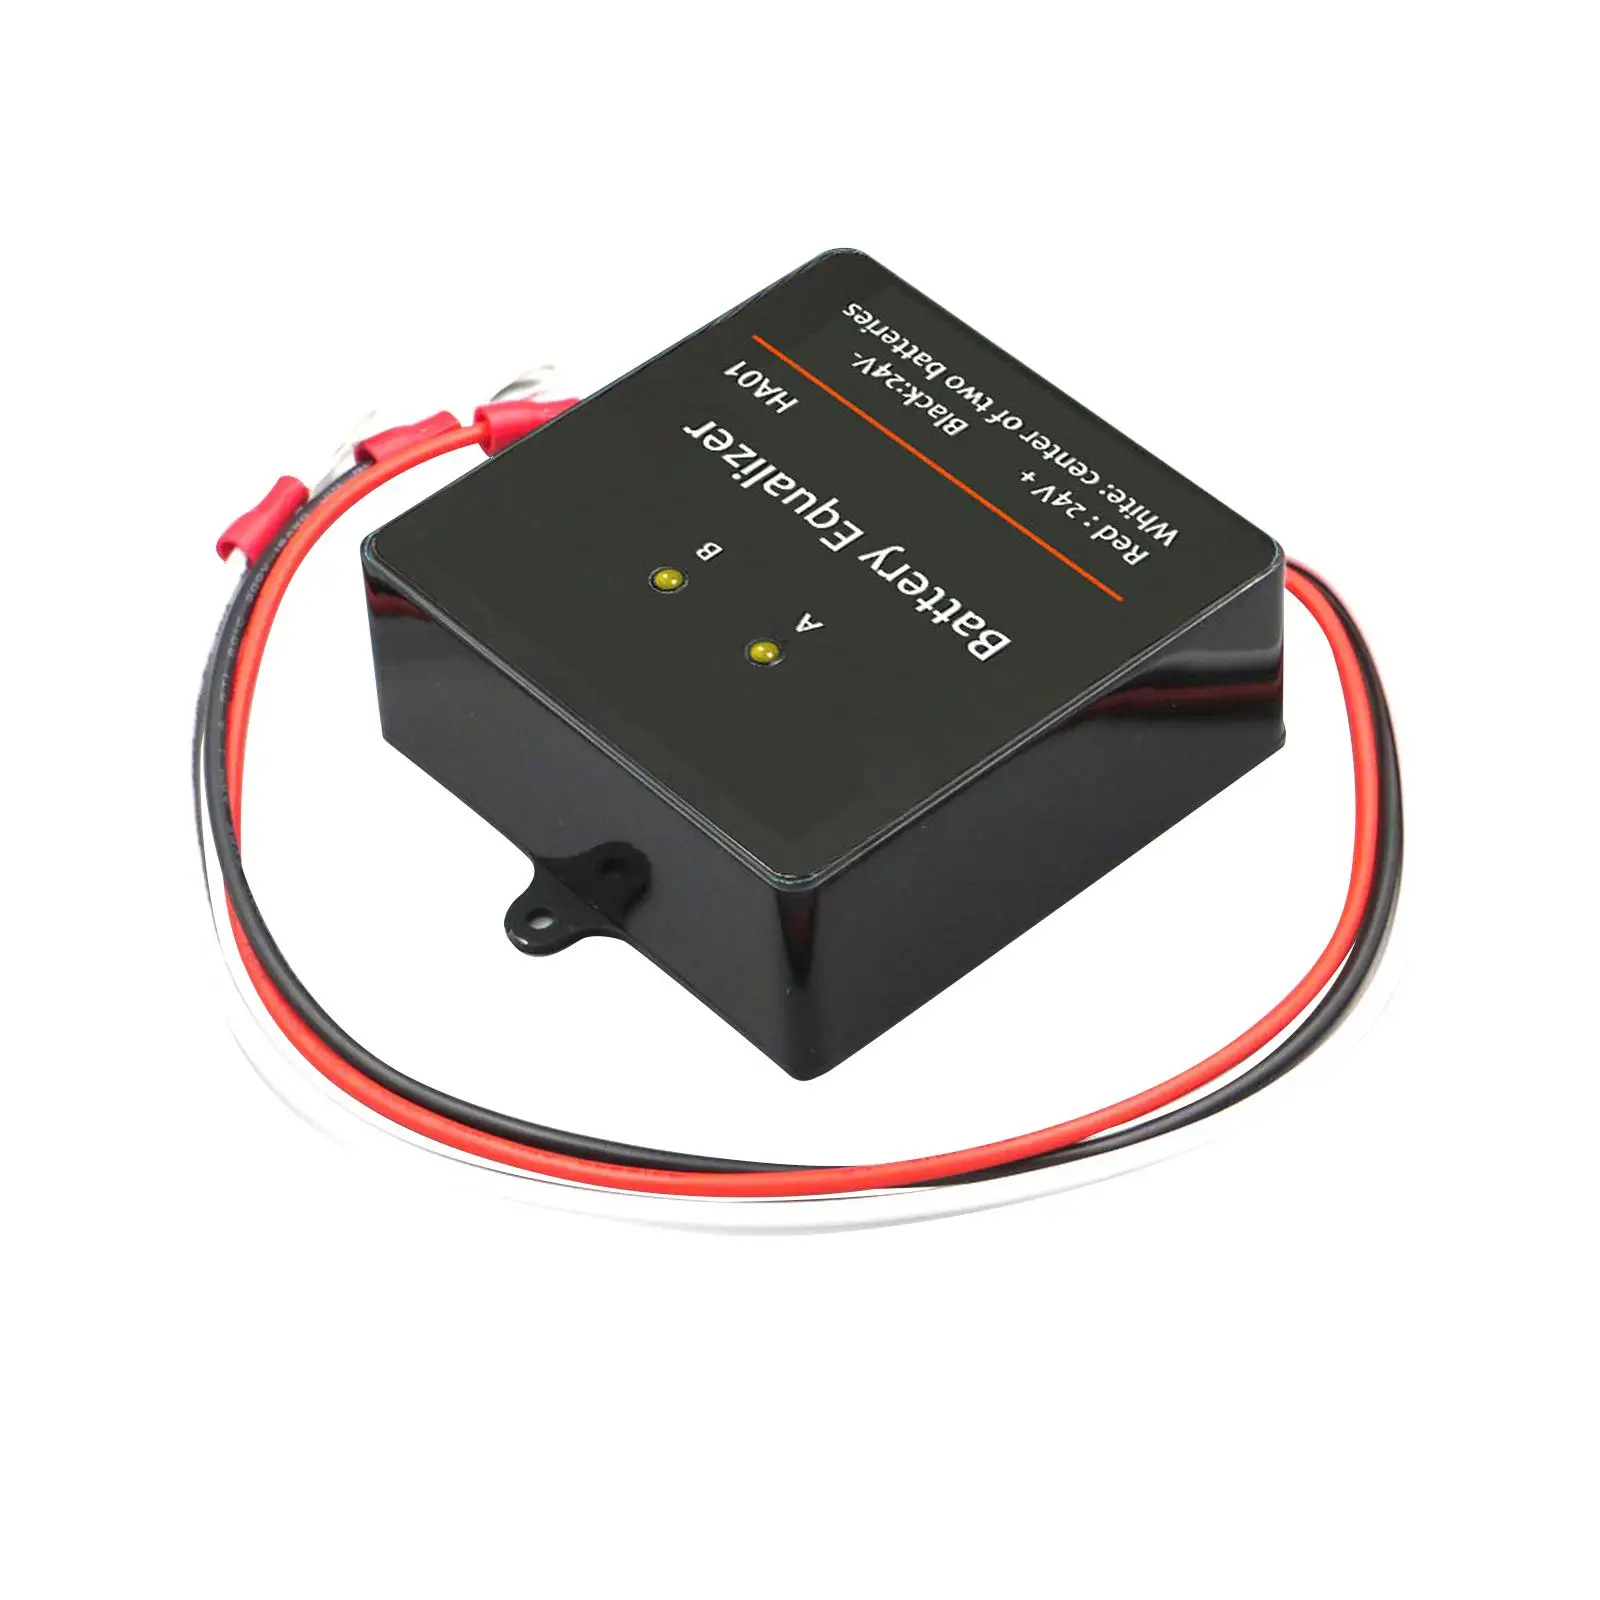 Battery Voltage Balancer 24V HA01 Voltage Regulator for Vehicle Boat RV